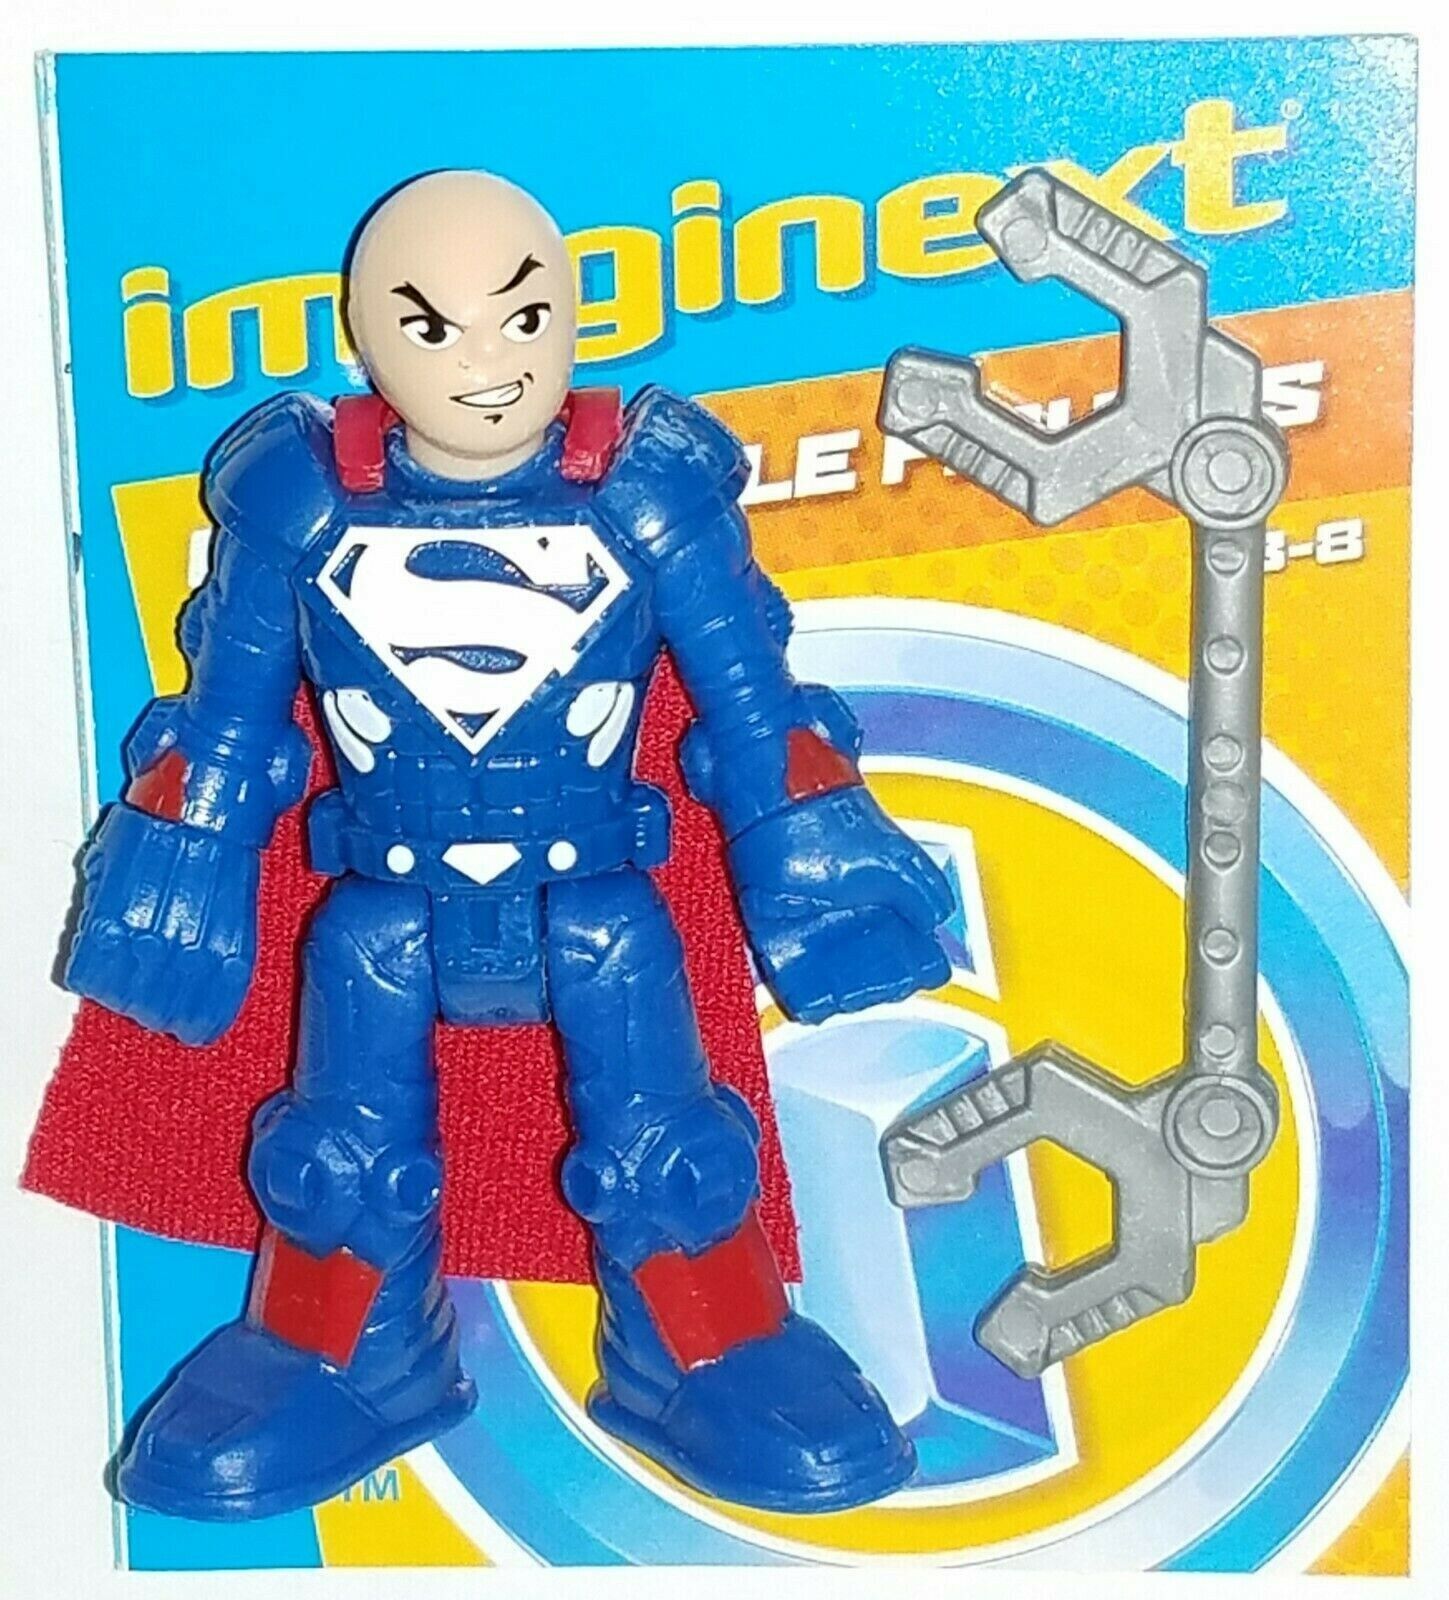 DC LEX LUTHOR (Superman suit) Imaginext SuperFriends Blind Bag Series 6 new open